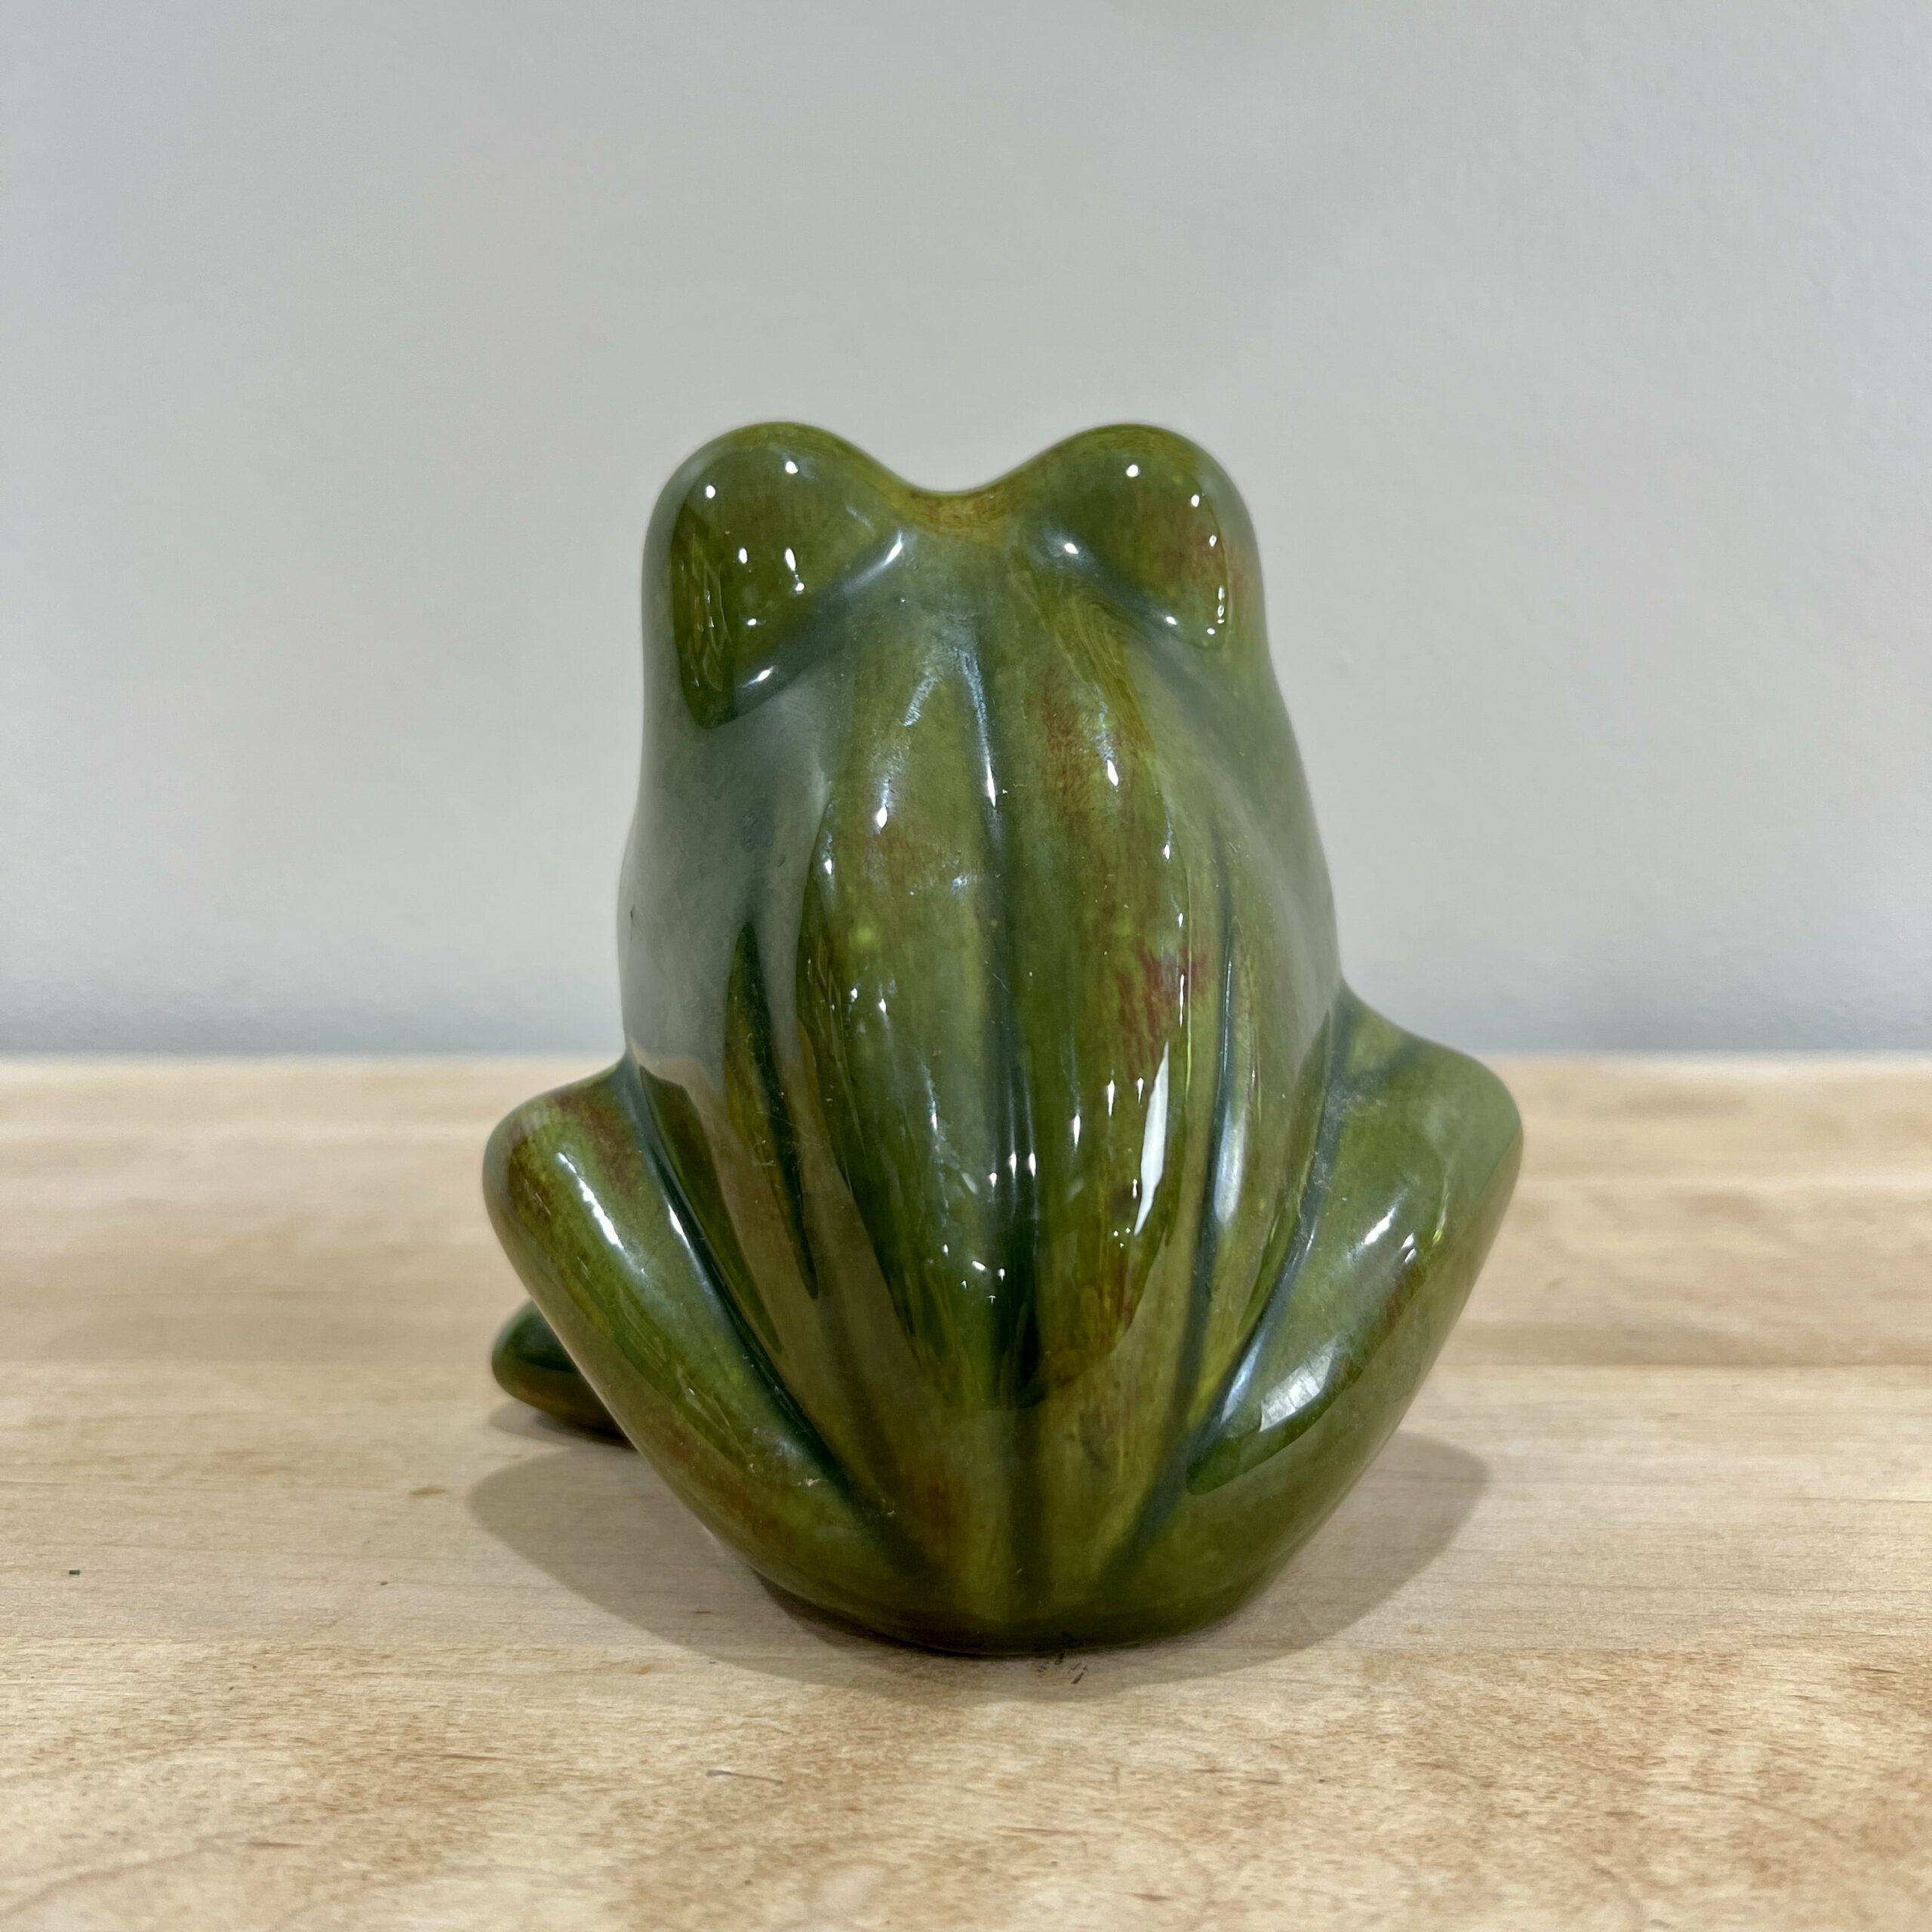 Ceramic Sponge/Scrubbie Holder (Frog)